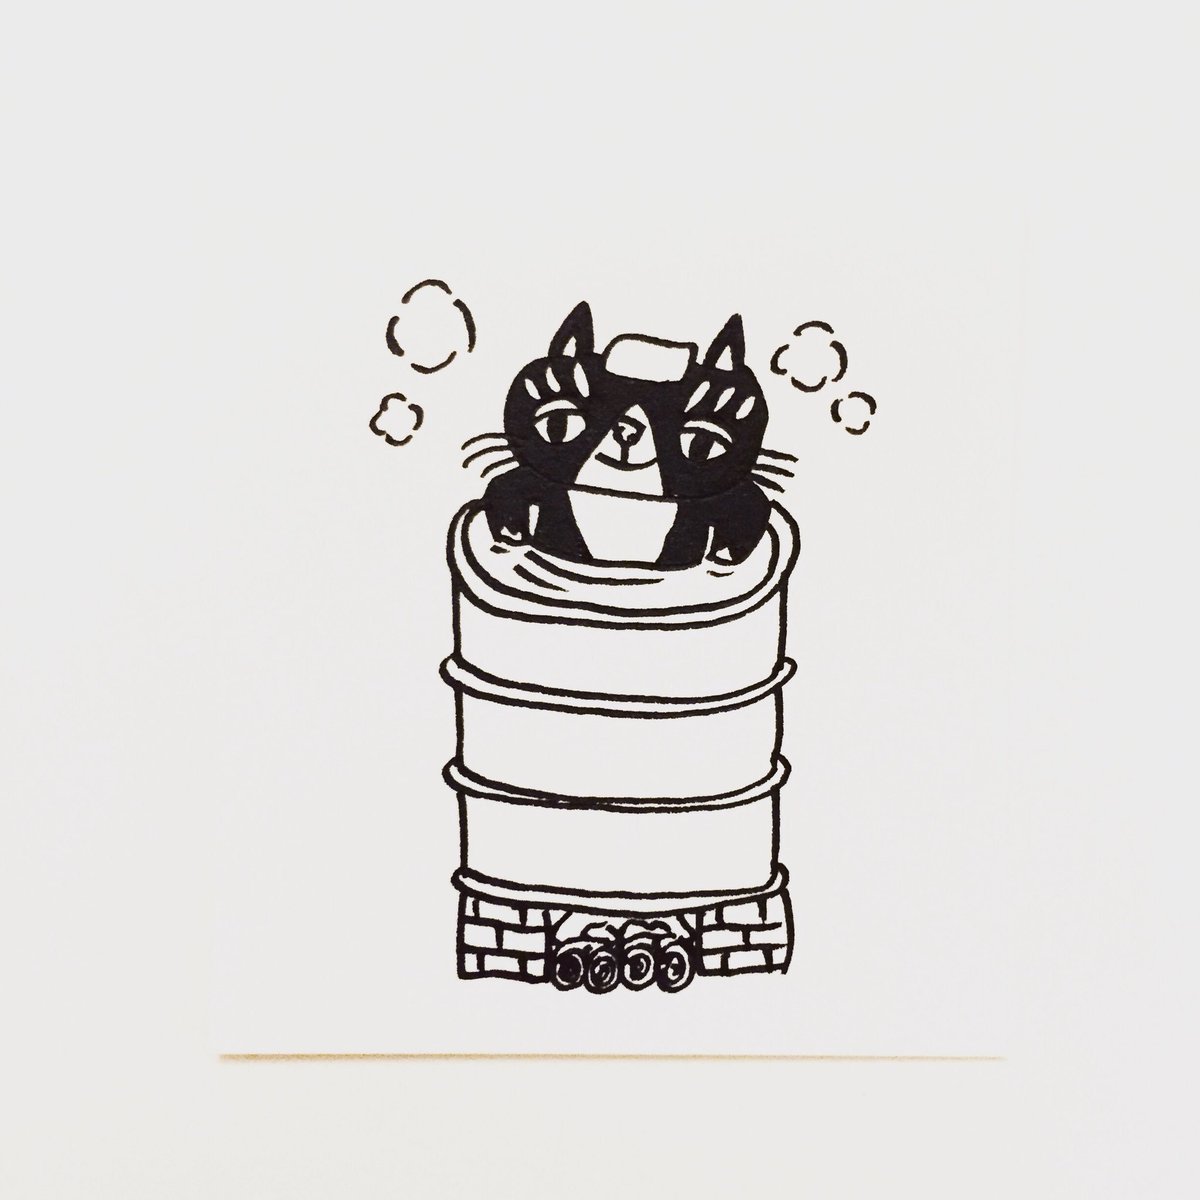 肌子 V Twitter 今日のイラストはコレ ｪ ドラム缶風呂を入ってる猫 イラスト 猫 ネコ ねこ オリジナル ペン画 アナログ画 ハチワレ ハチワレ猫